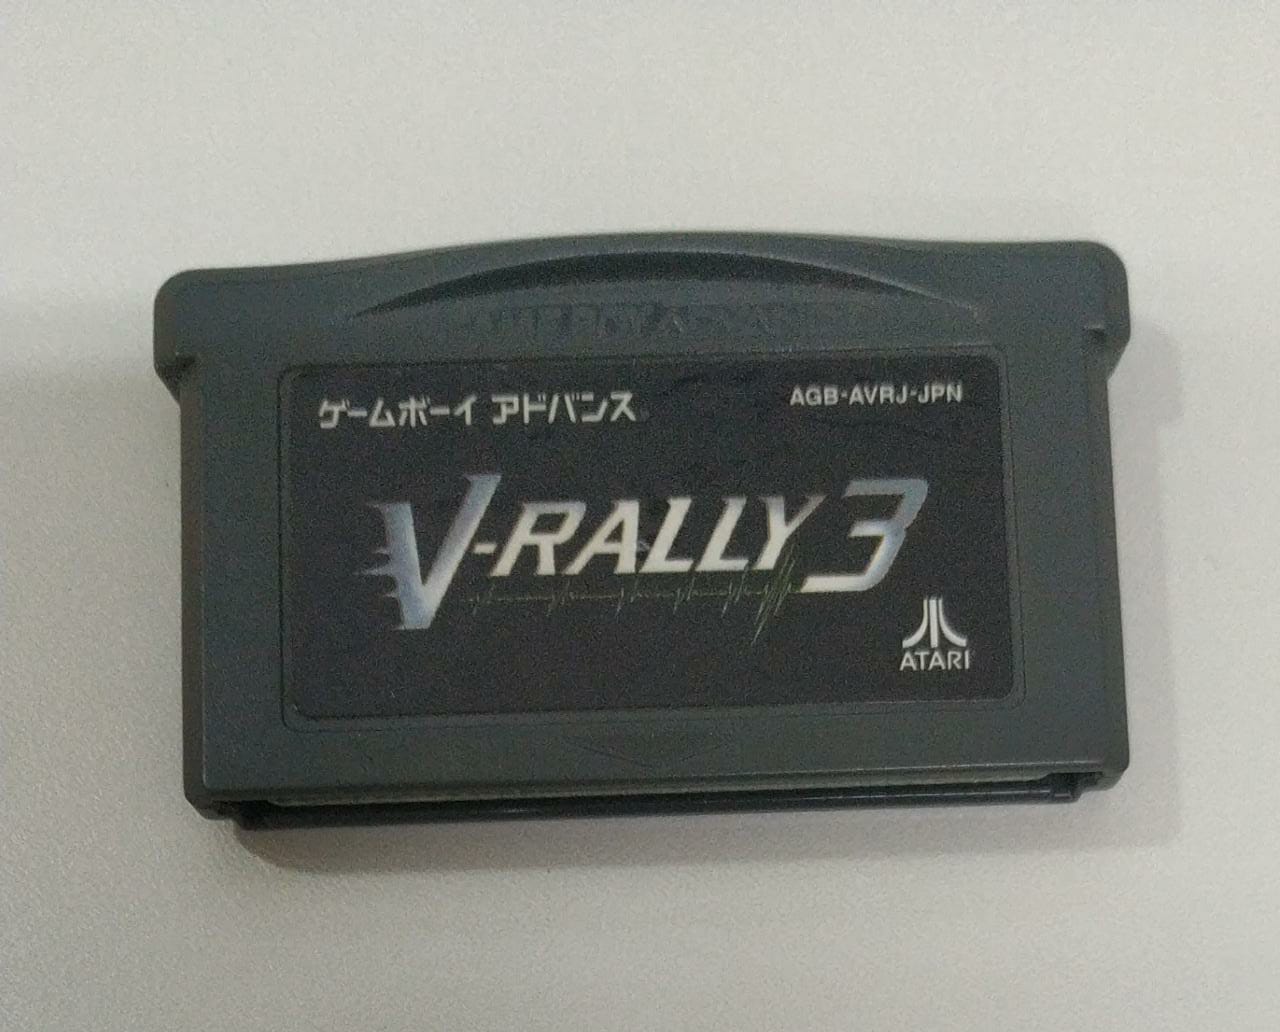 V-RALLY 3 - Cartucho - Game Boy Advance - Usado